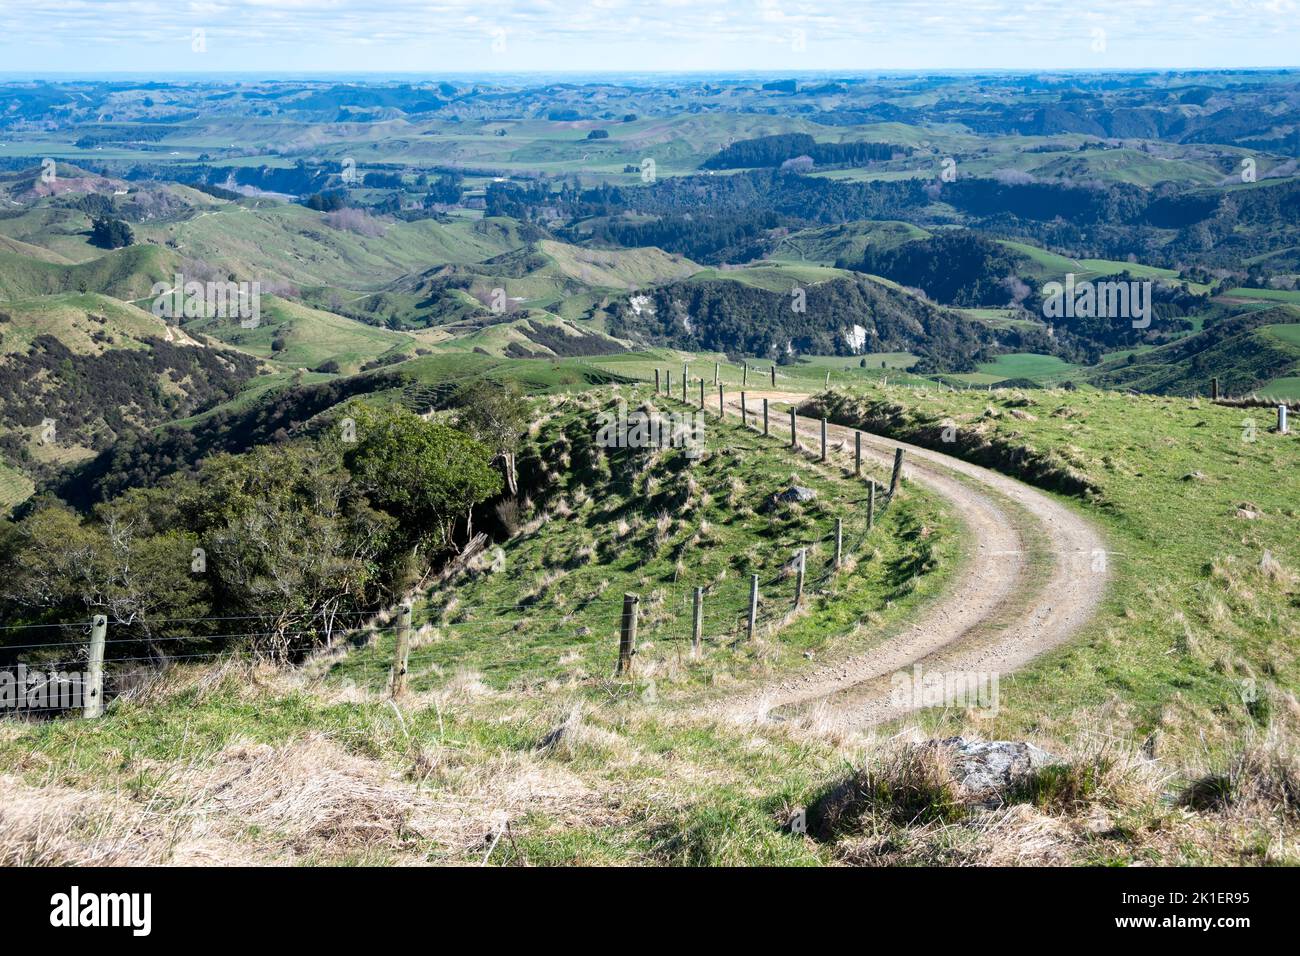 Granja pista en colinas, Pohangina Valley, Manawatu, Isla Norte, Nueva Zelanda Foto de stock